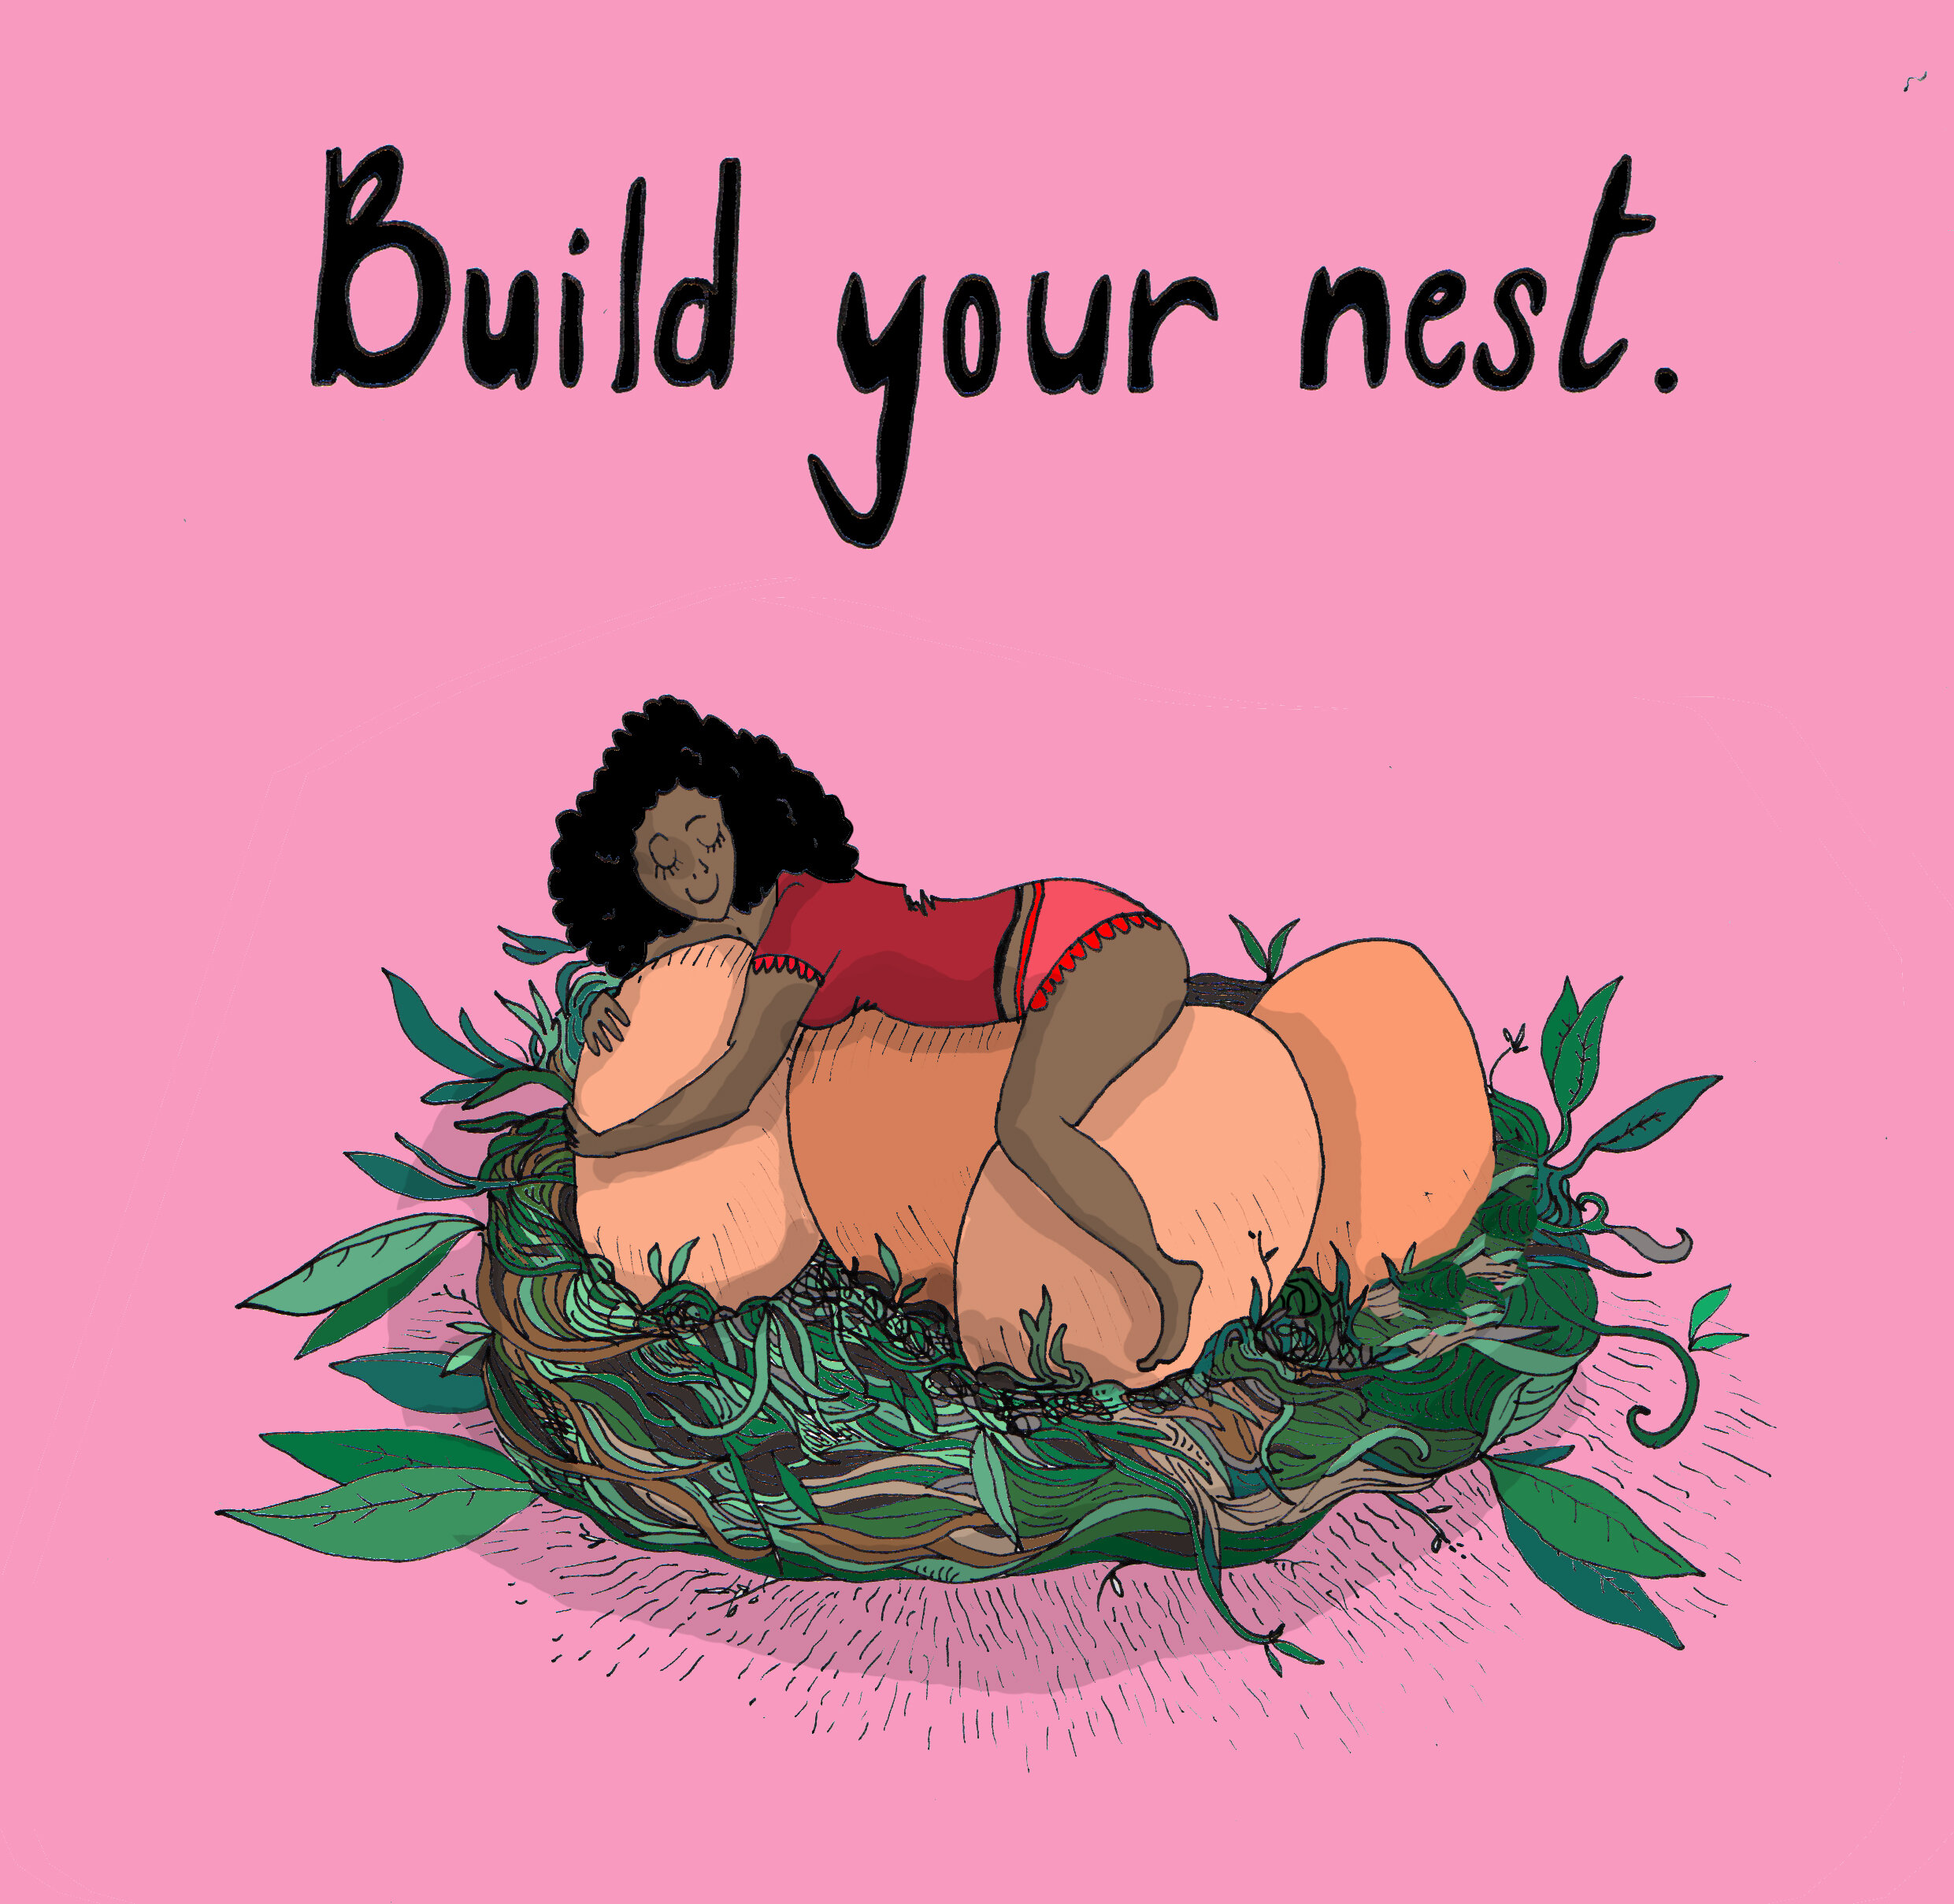 Ruth-3.build-your-nest.jpg